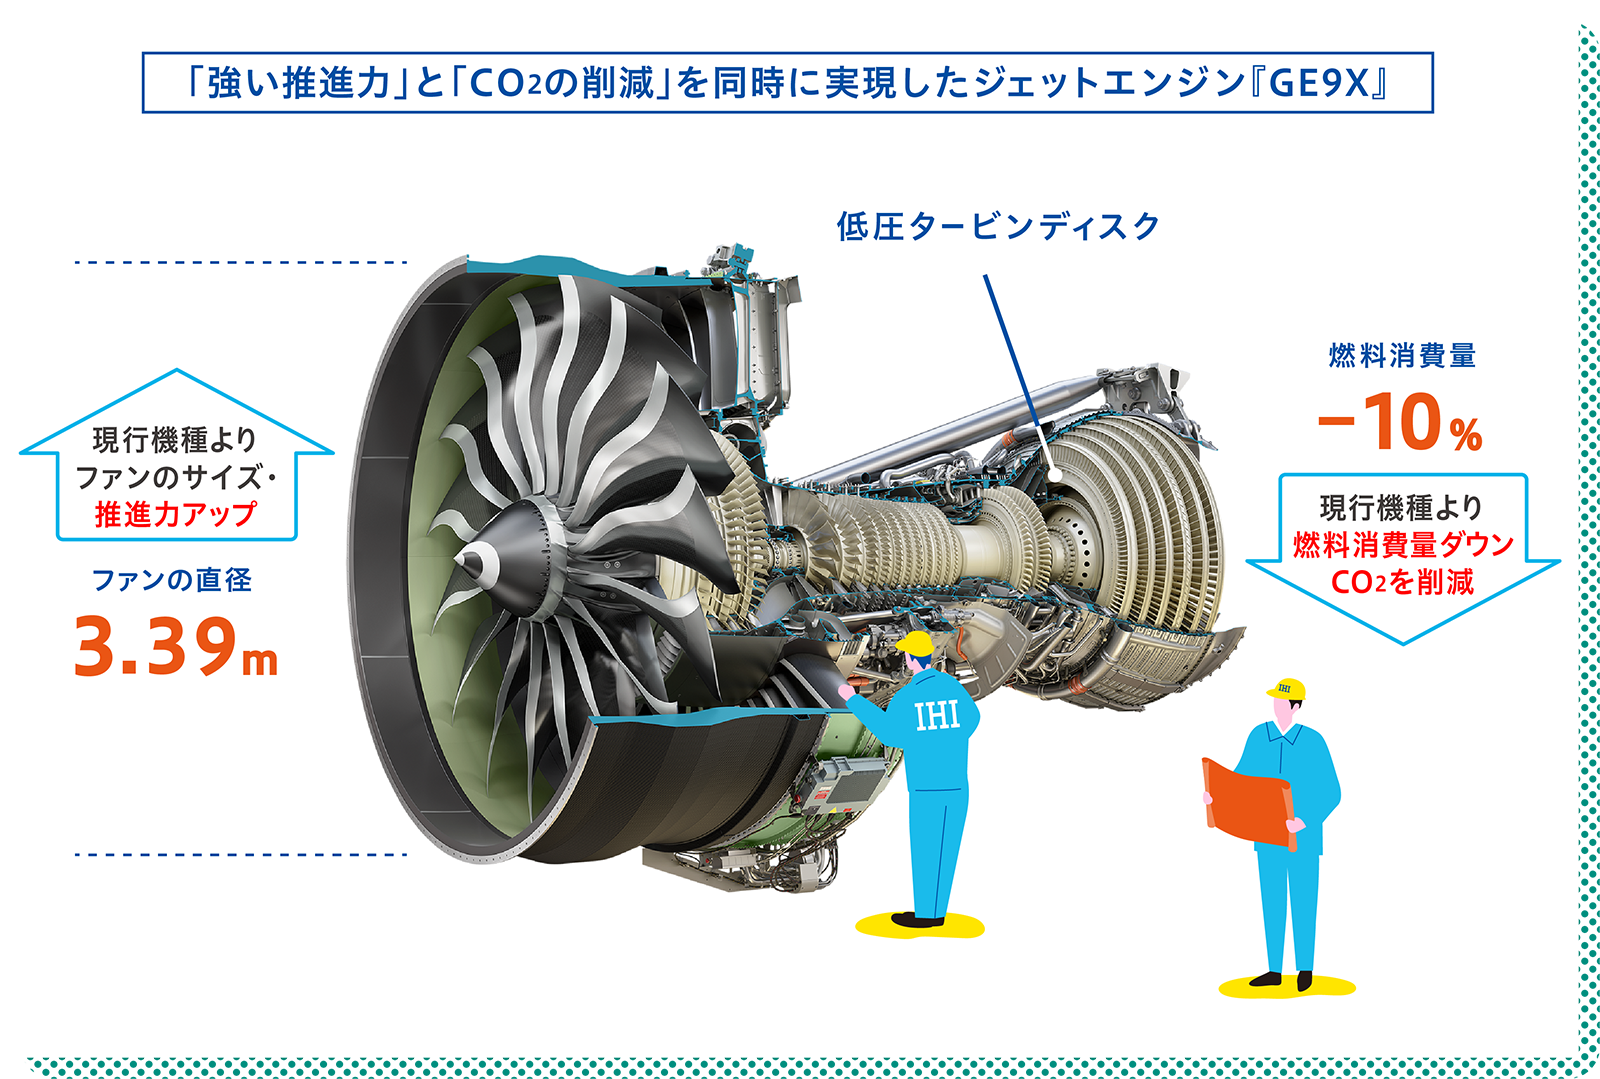 「強い推進力」と「CO2の削減」を同時に実現したジェットエンジン『GE9X』